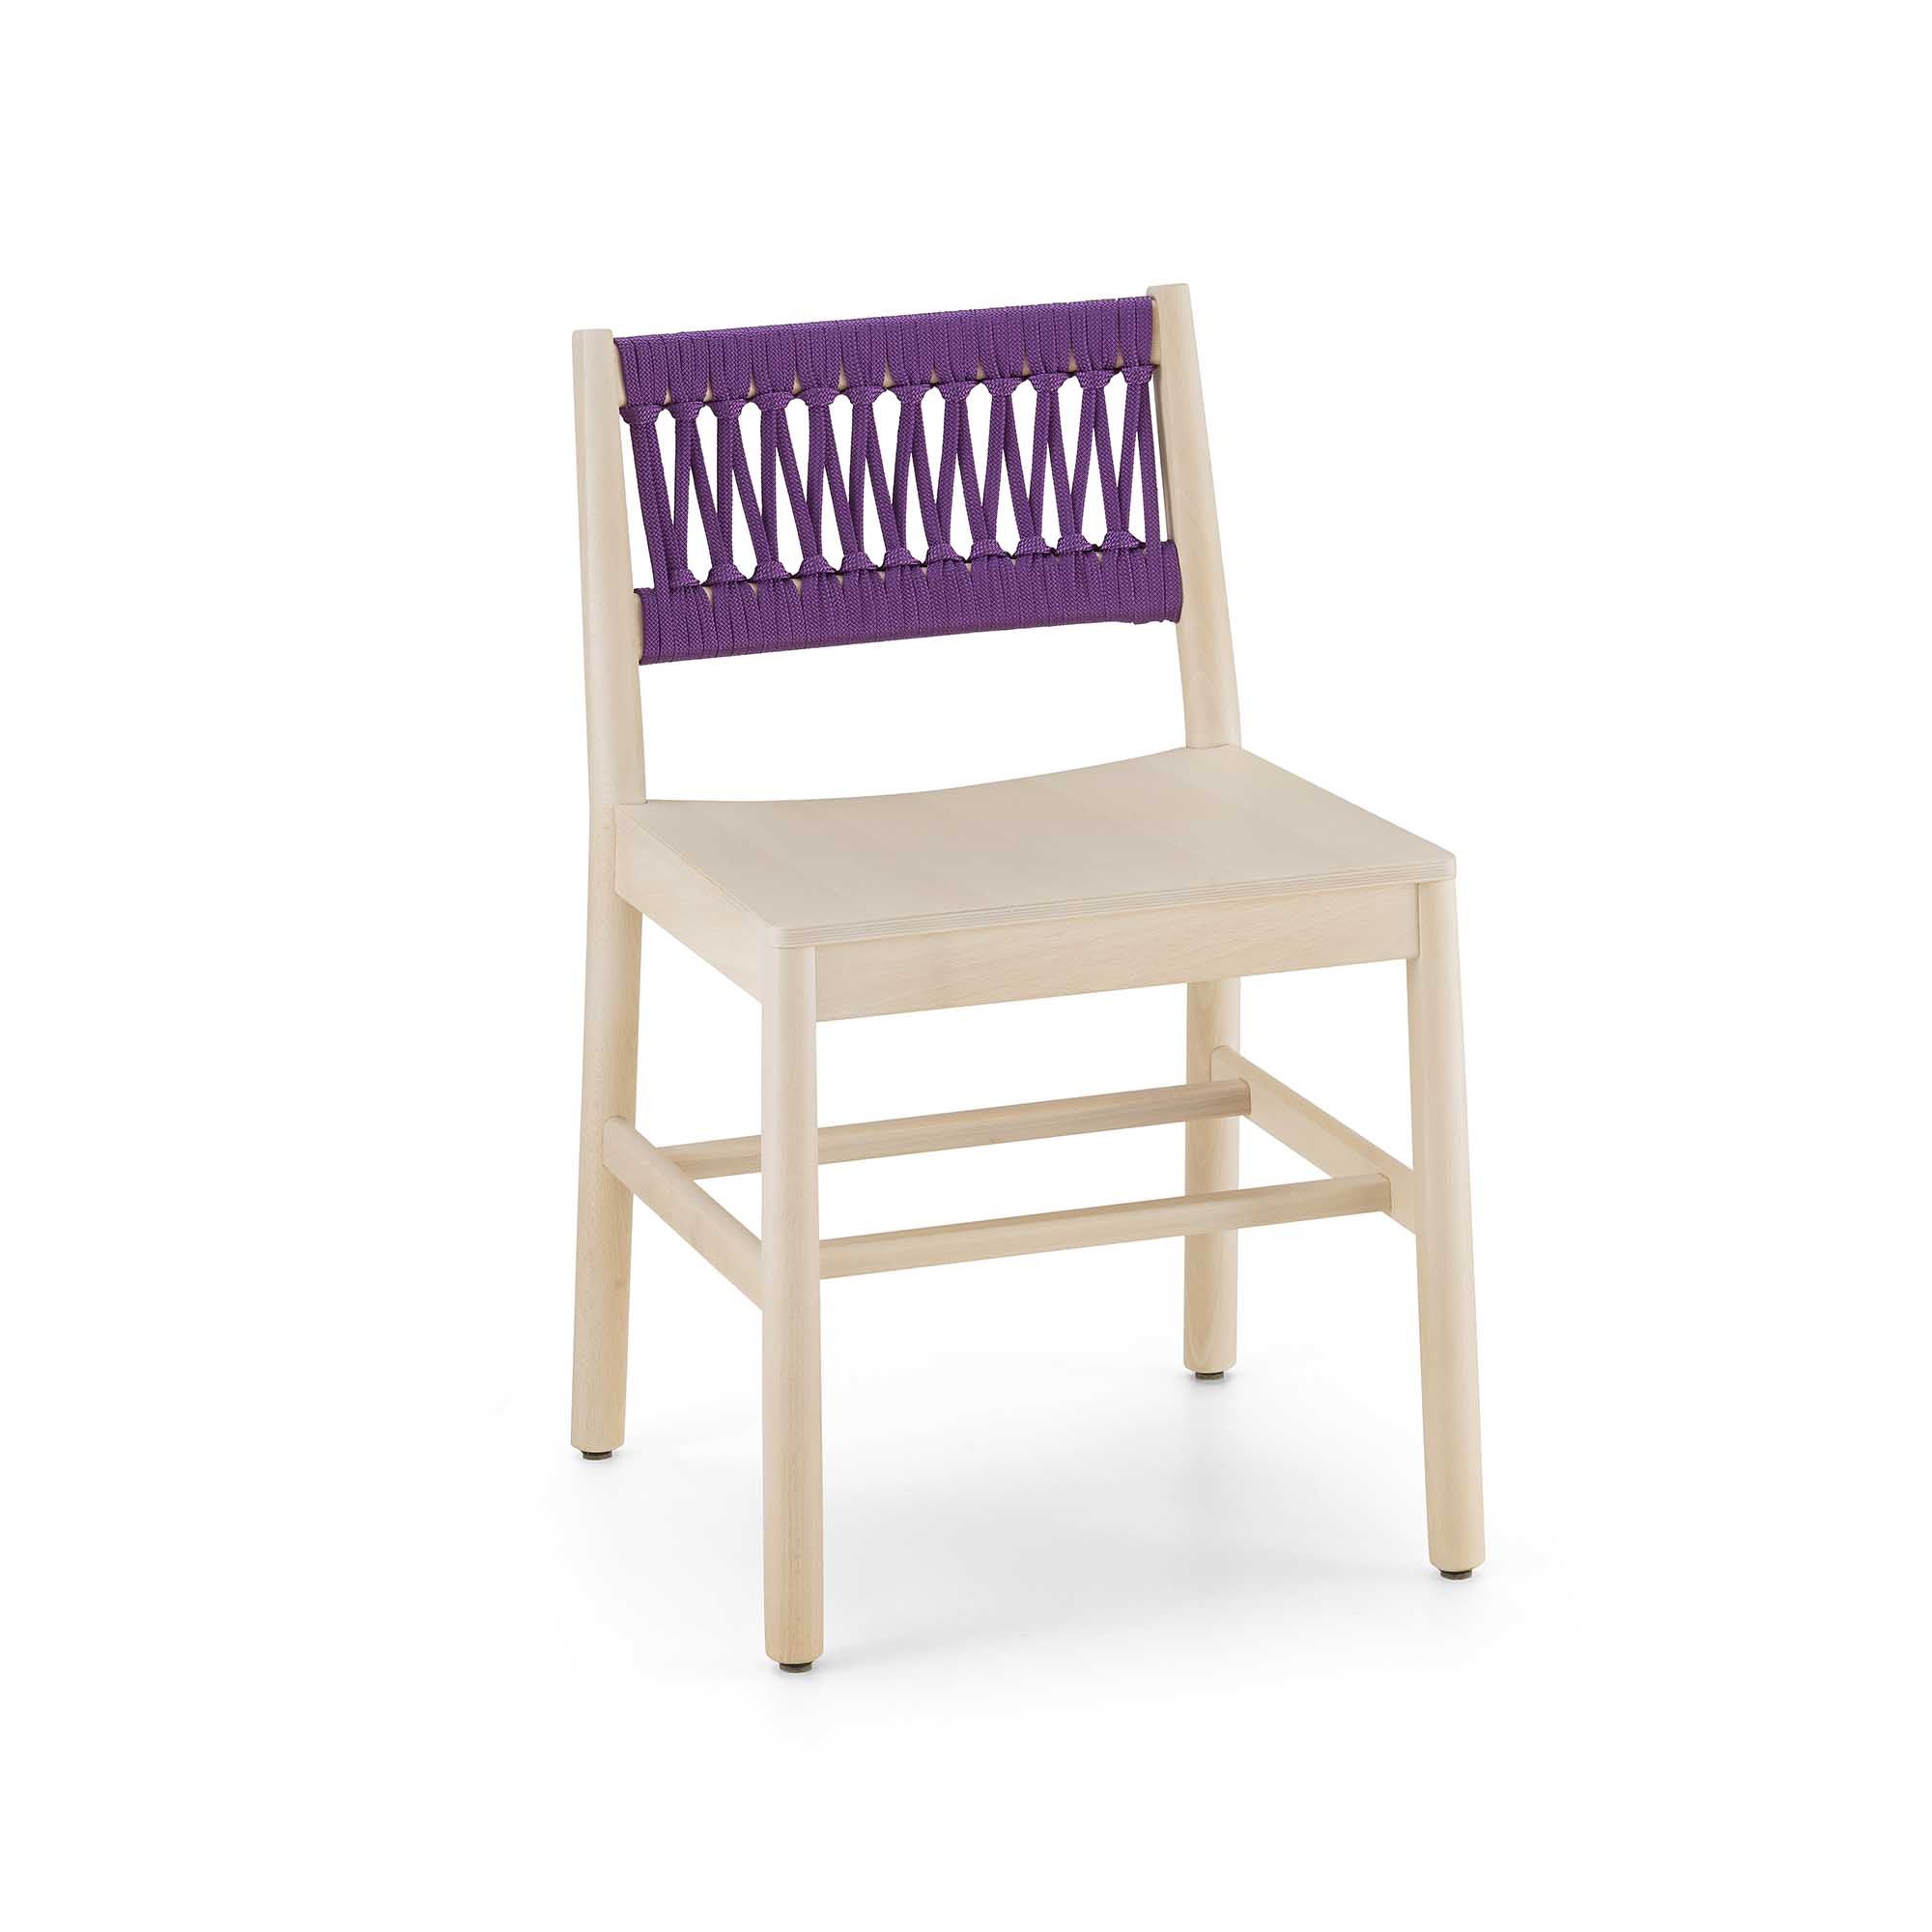 JULIE IN Chair beech frame, purple backrest